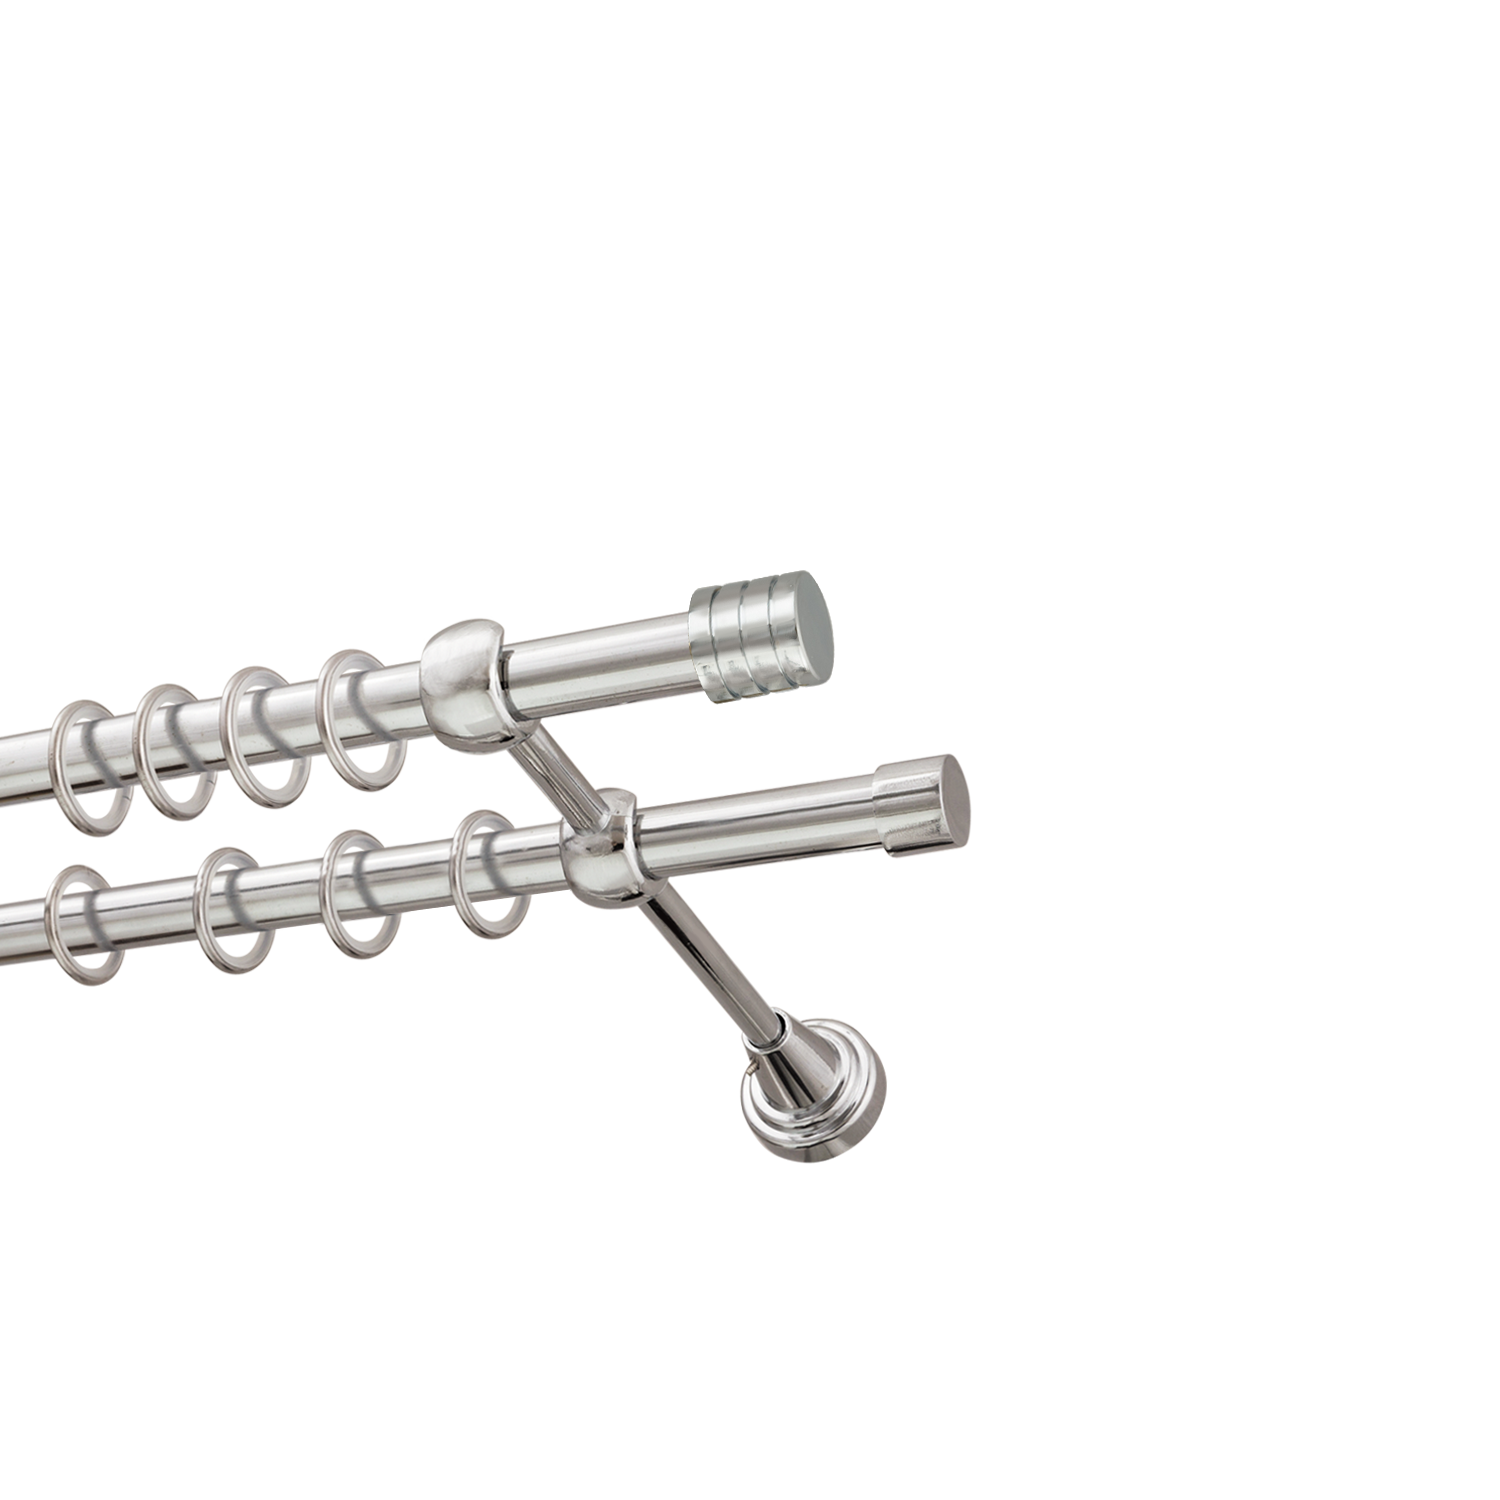 Металлический карниз для штор Подиум, двухрядный 16/16 мм, серебро, гладкая штанга, длина 200 см